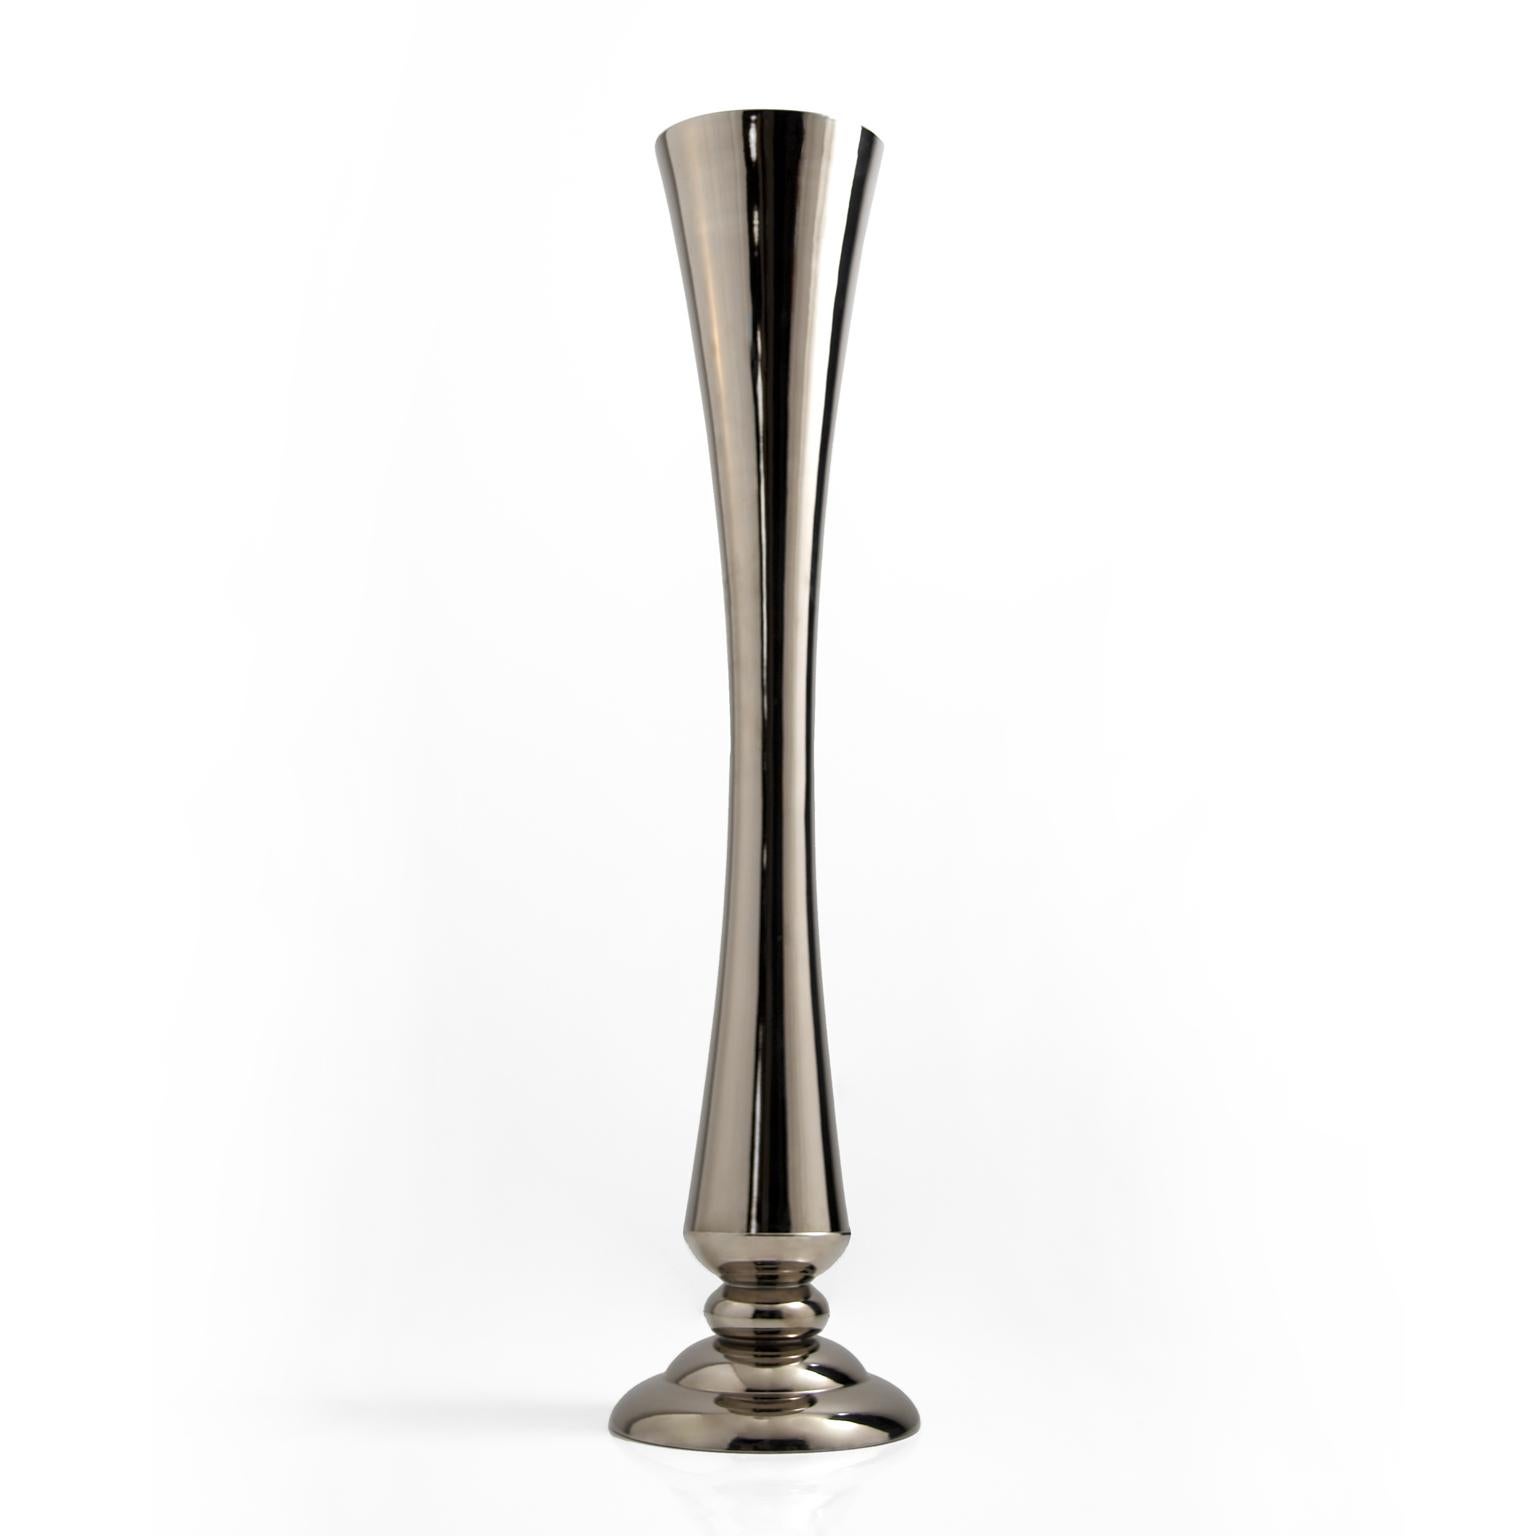 Ceramic vase FLUTE- code VS211 
handcrafted in platinum
measures: 
Height 140.0 cm.
diameter 27.0 cm.